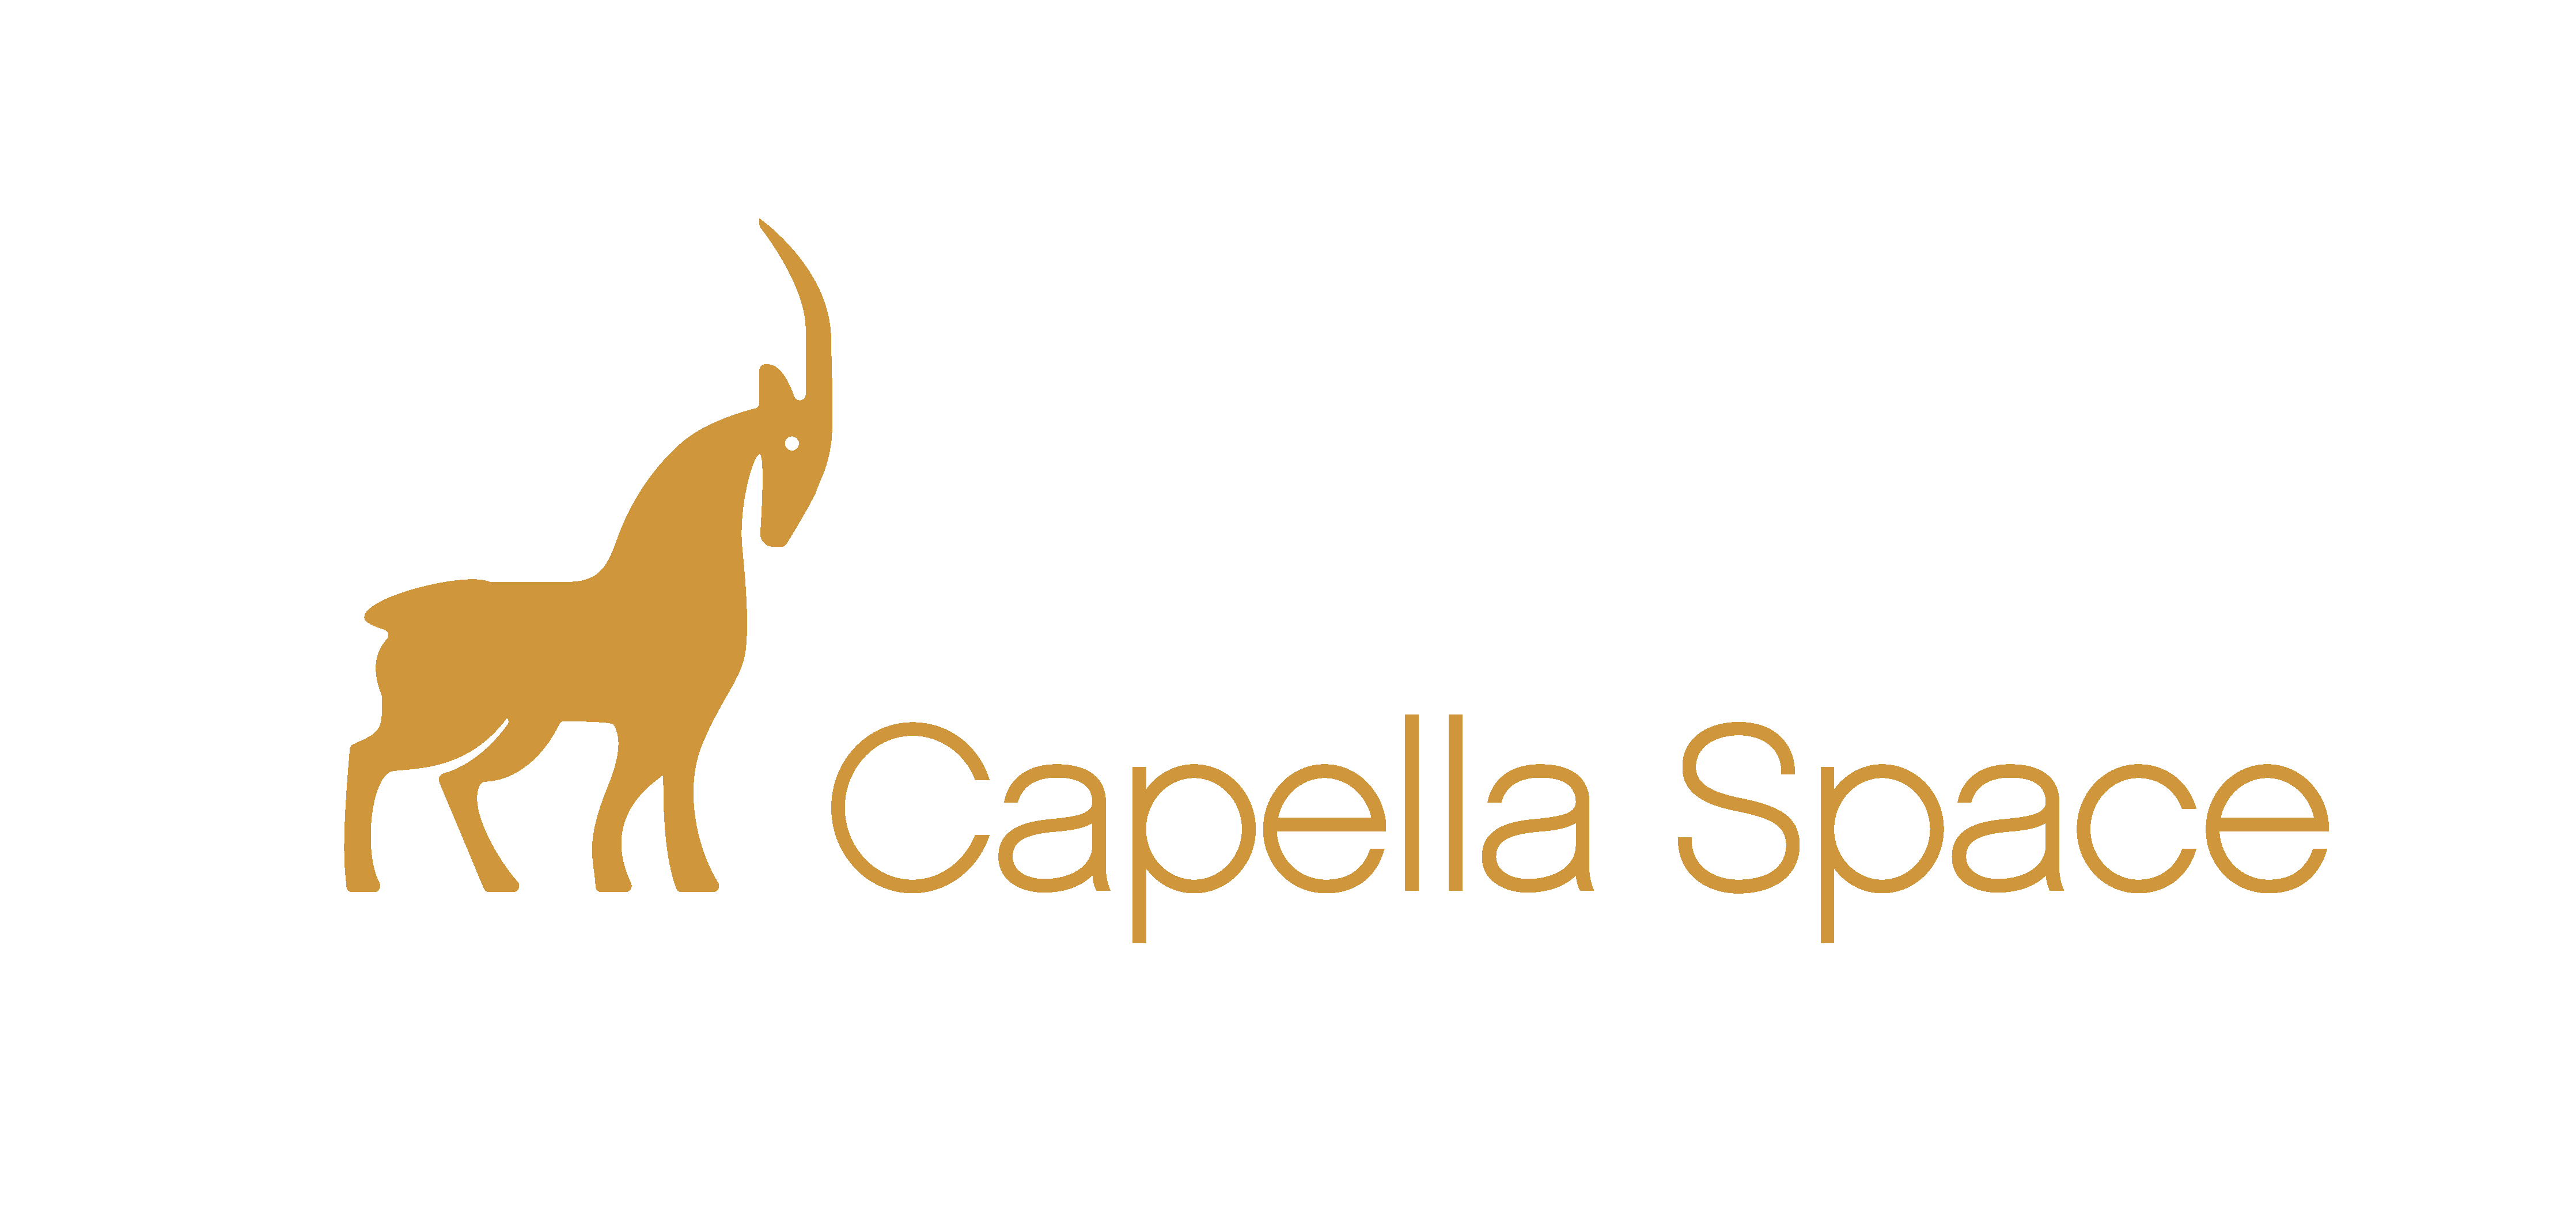 Capella Space Corp